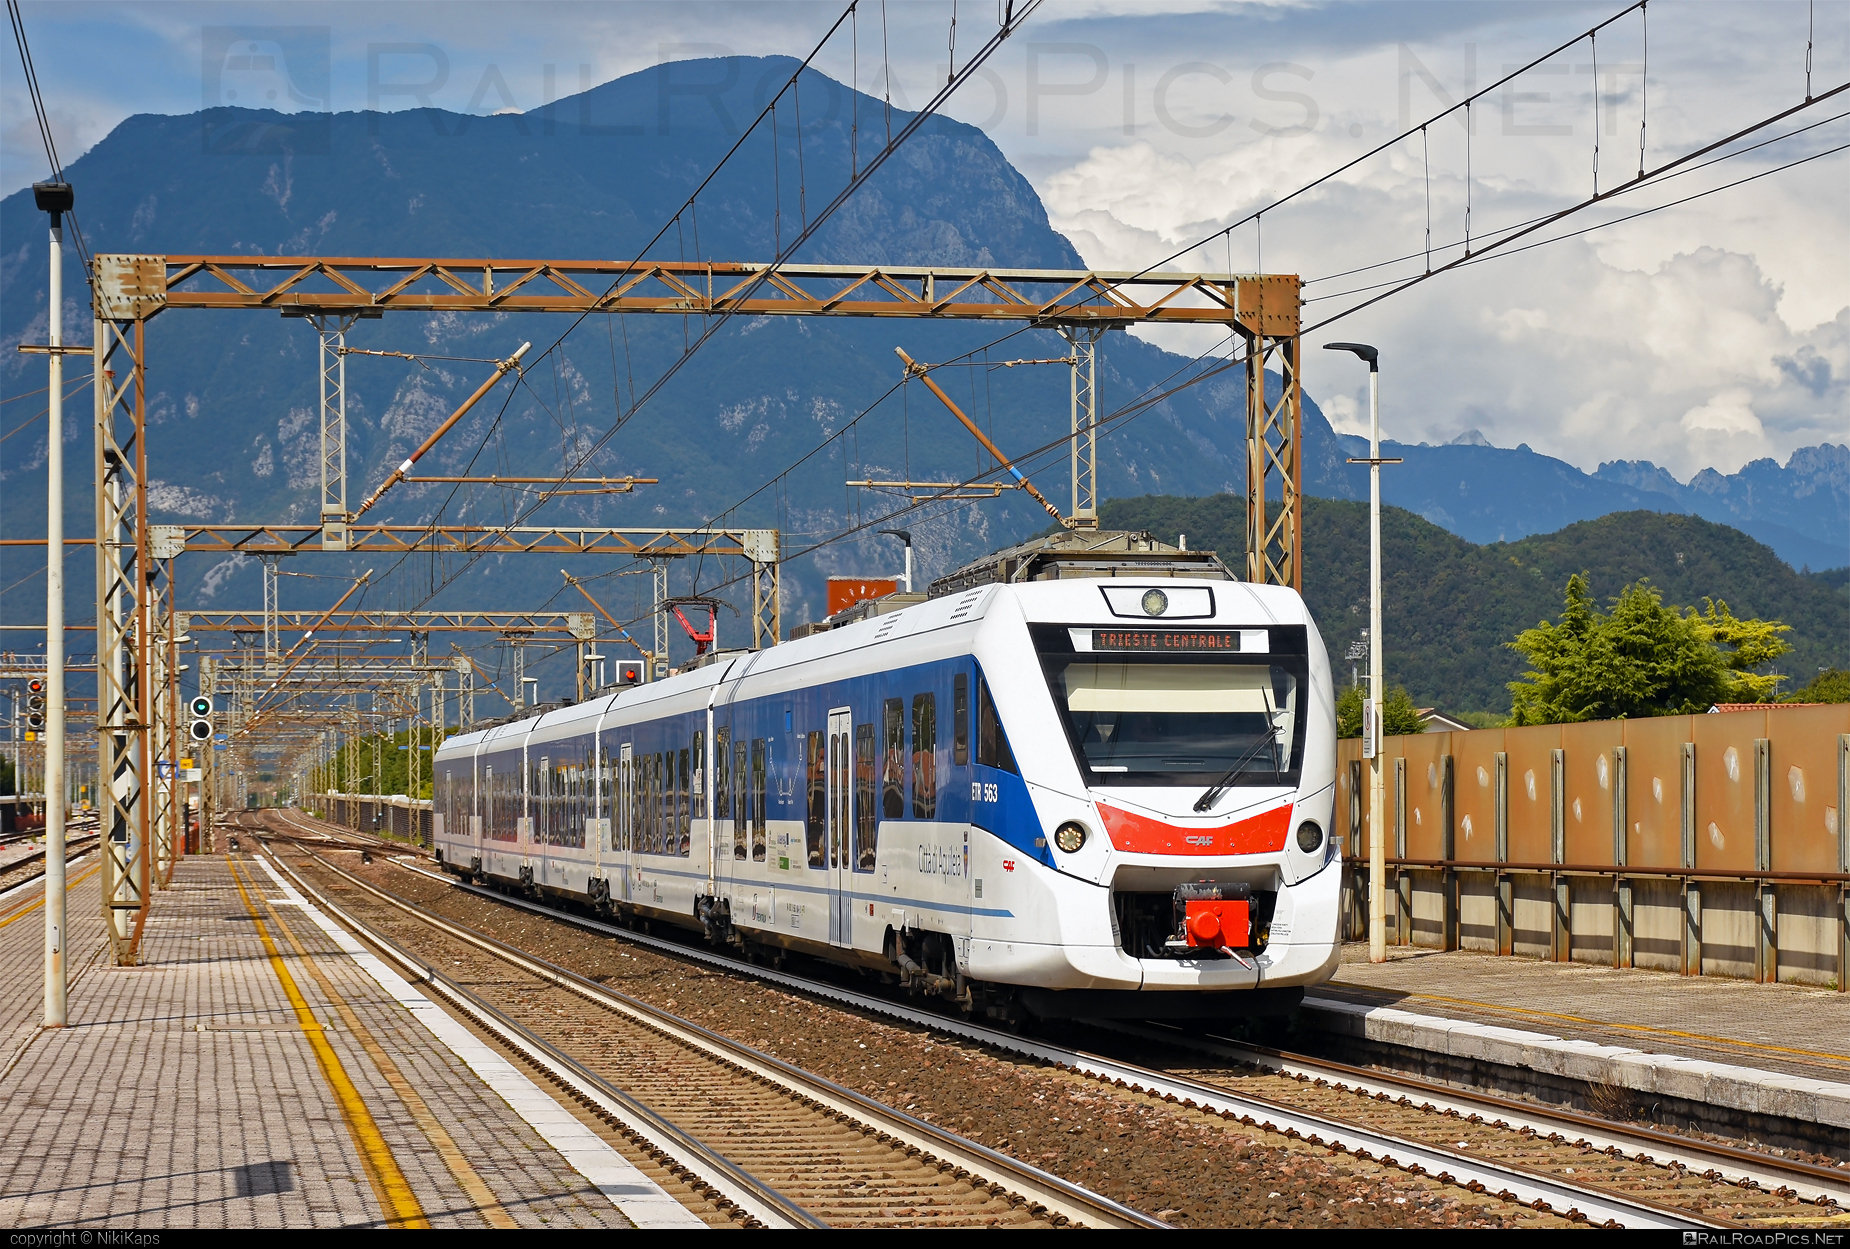 CAF Civity - 563 004-2 operated by Trenitalia S.p.A. #ConstruccionesYAuxiliarDeFerrocarriles #caf #cafCivity #civity #ferroviedellostato #fs #fsitaliane #trenitalia #trenitaliaspa